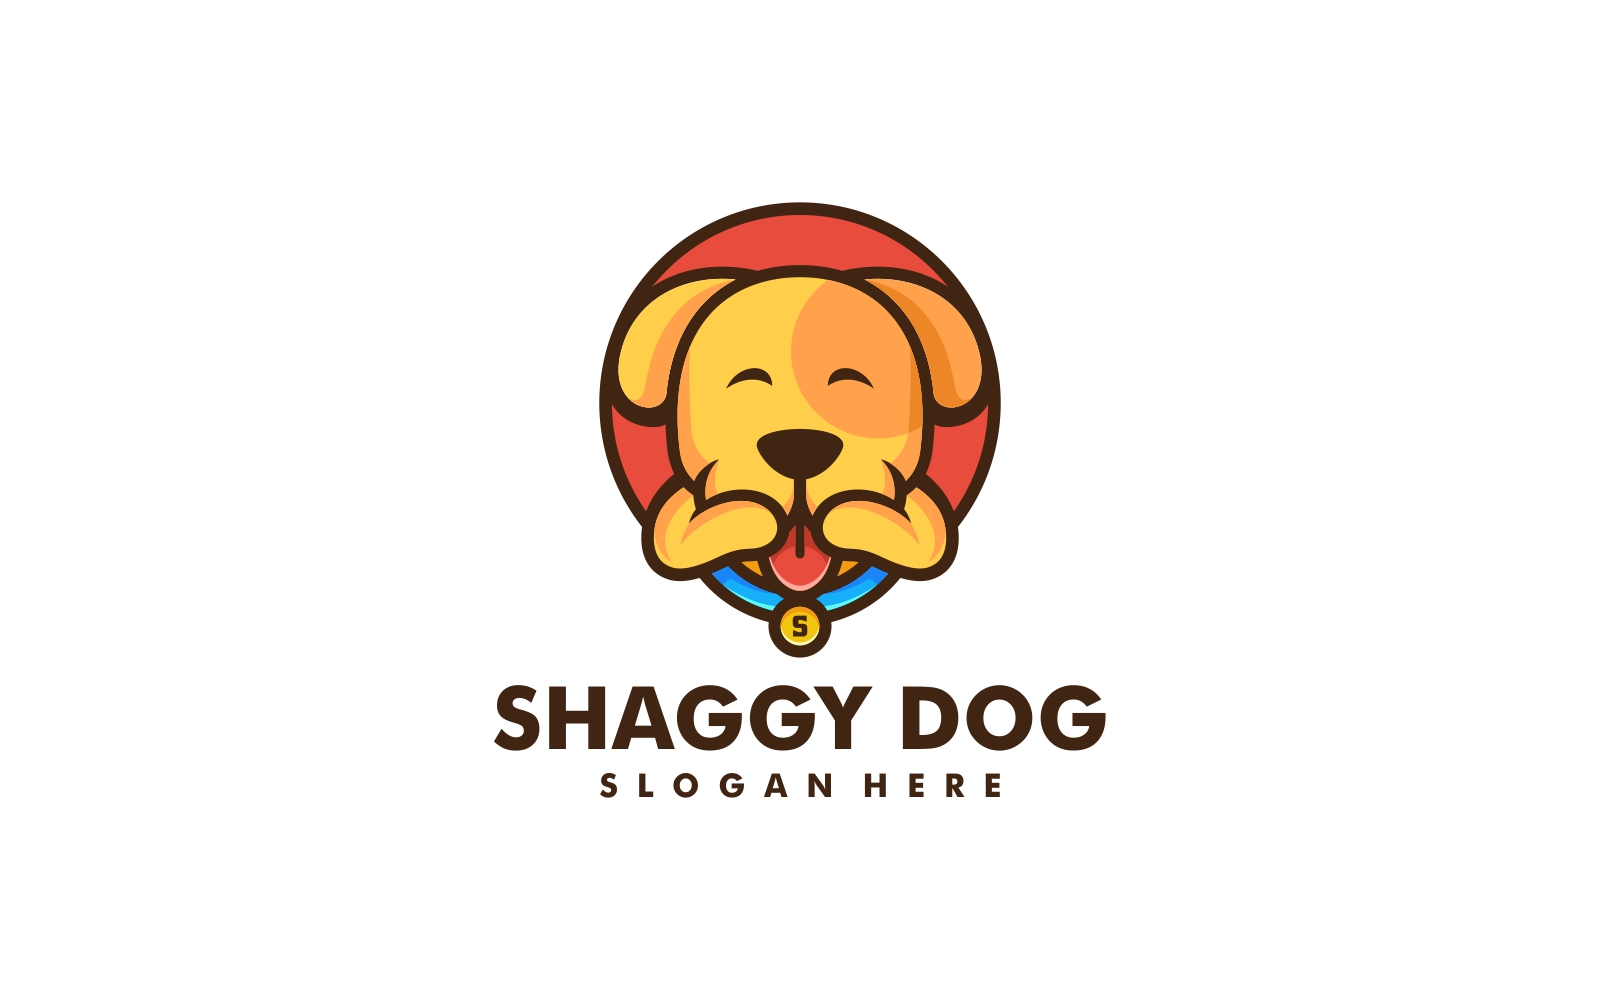 Dog Mascot Cartoon Logo Vol.1